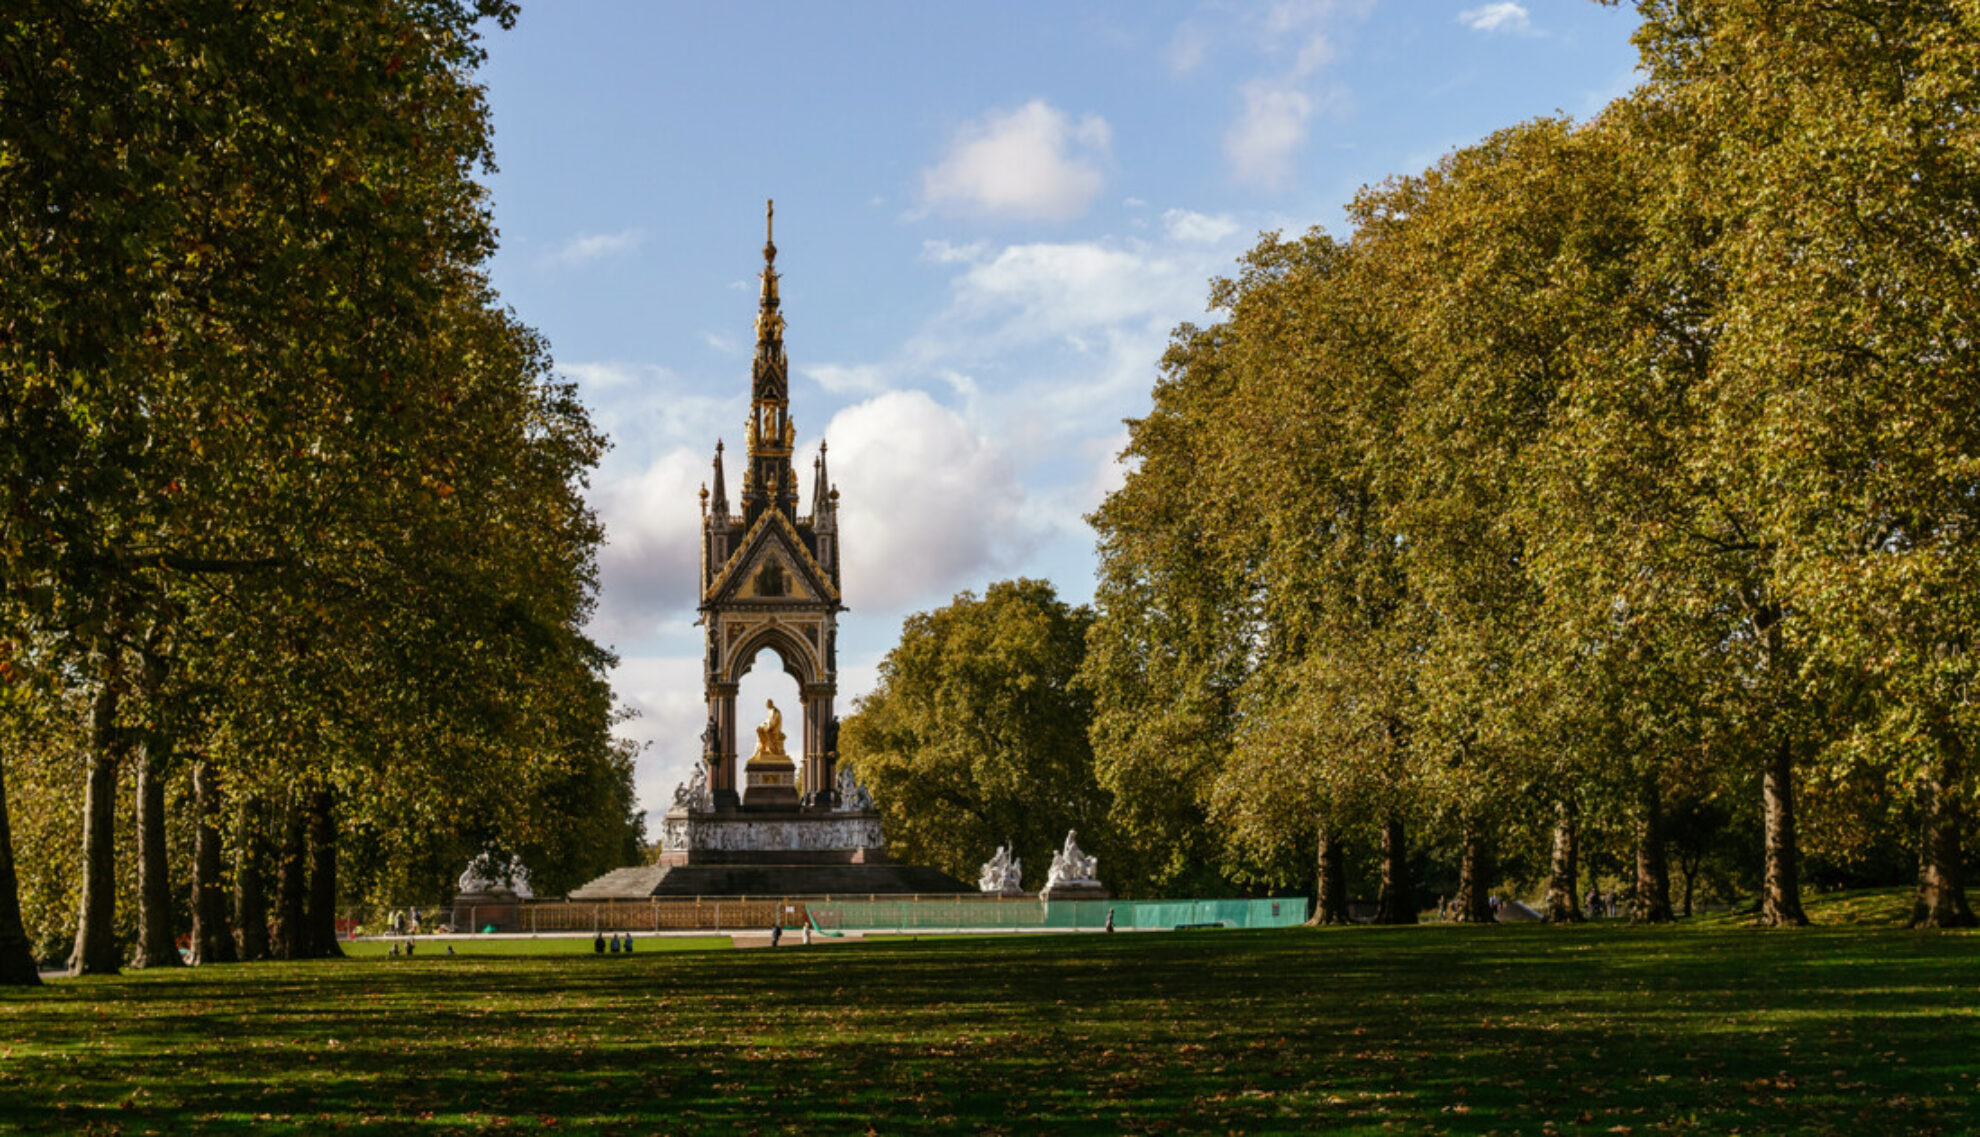 The Albert Memorial in Kensington Gardens, London